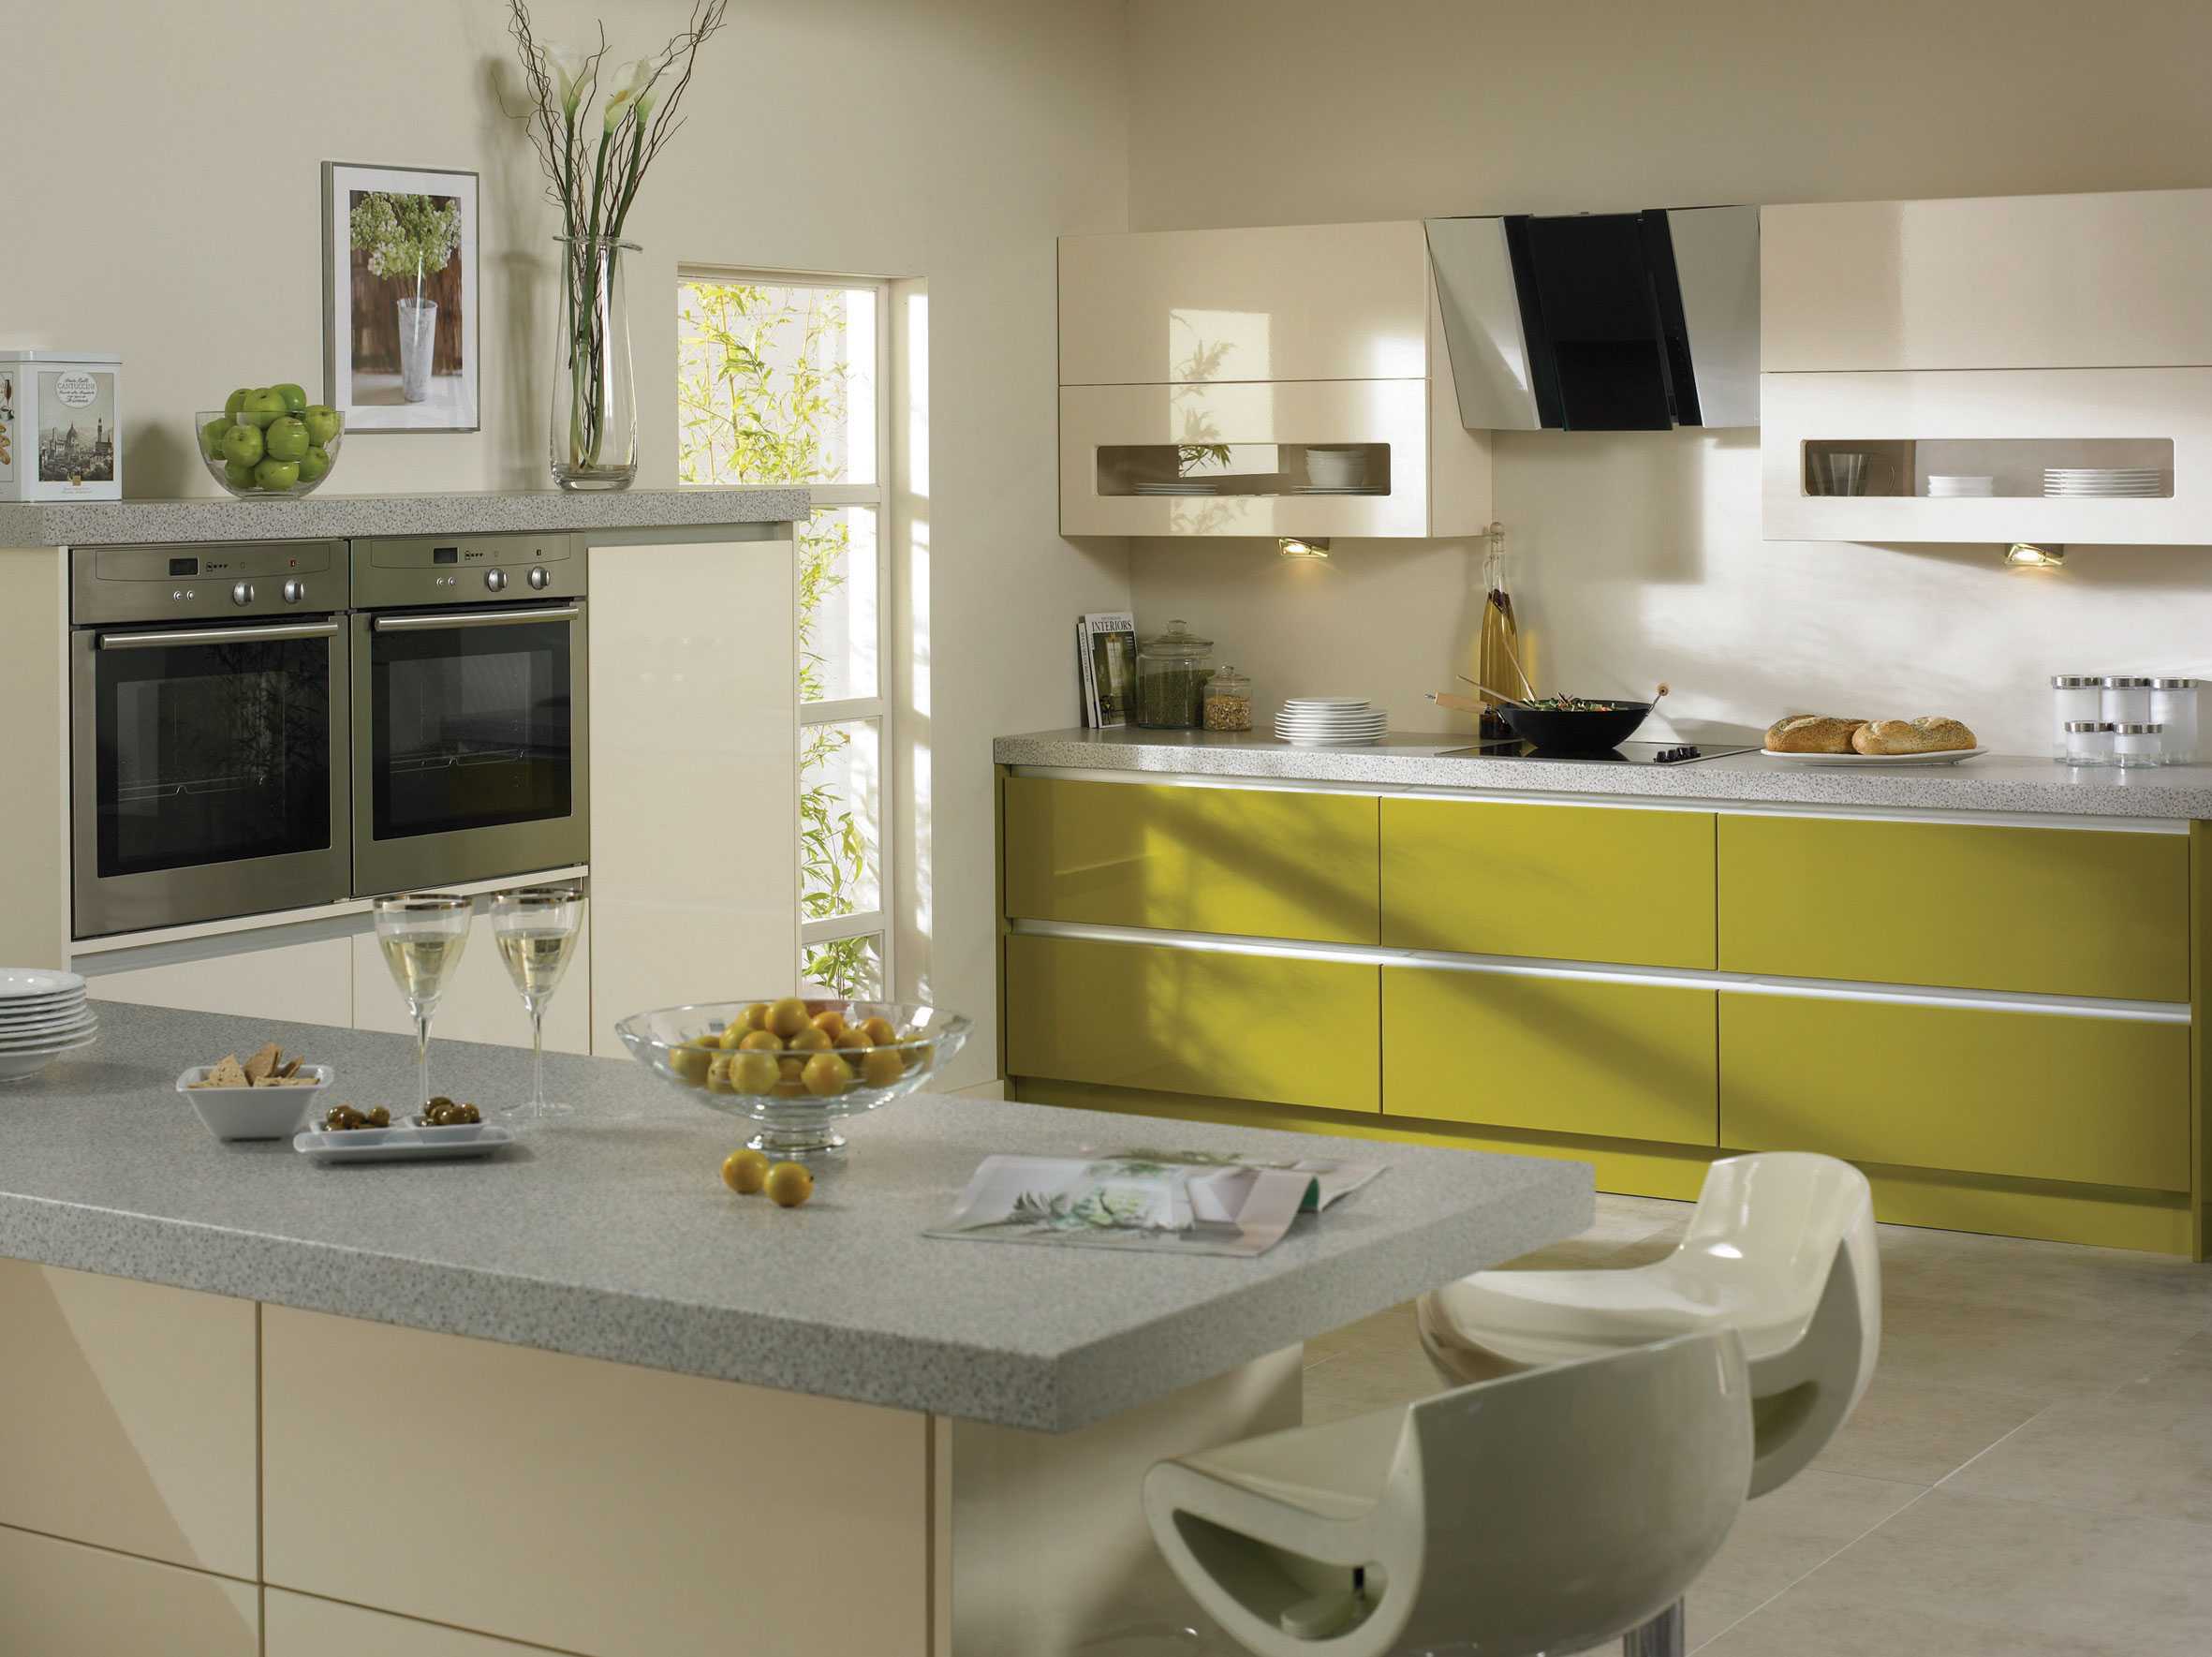 Фисташковая кухня: интерьер с обоями оливкового цвета, гарнитур в стиле прованс